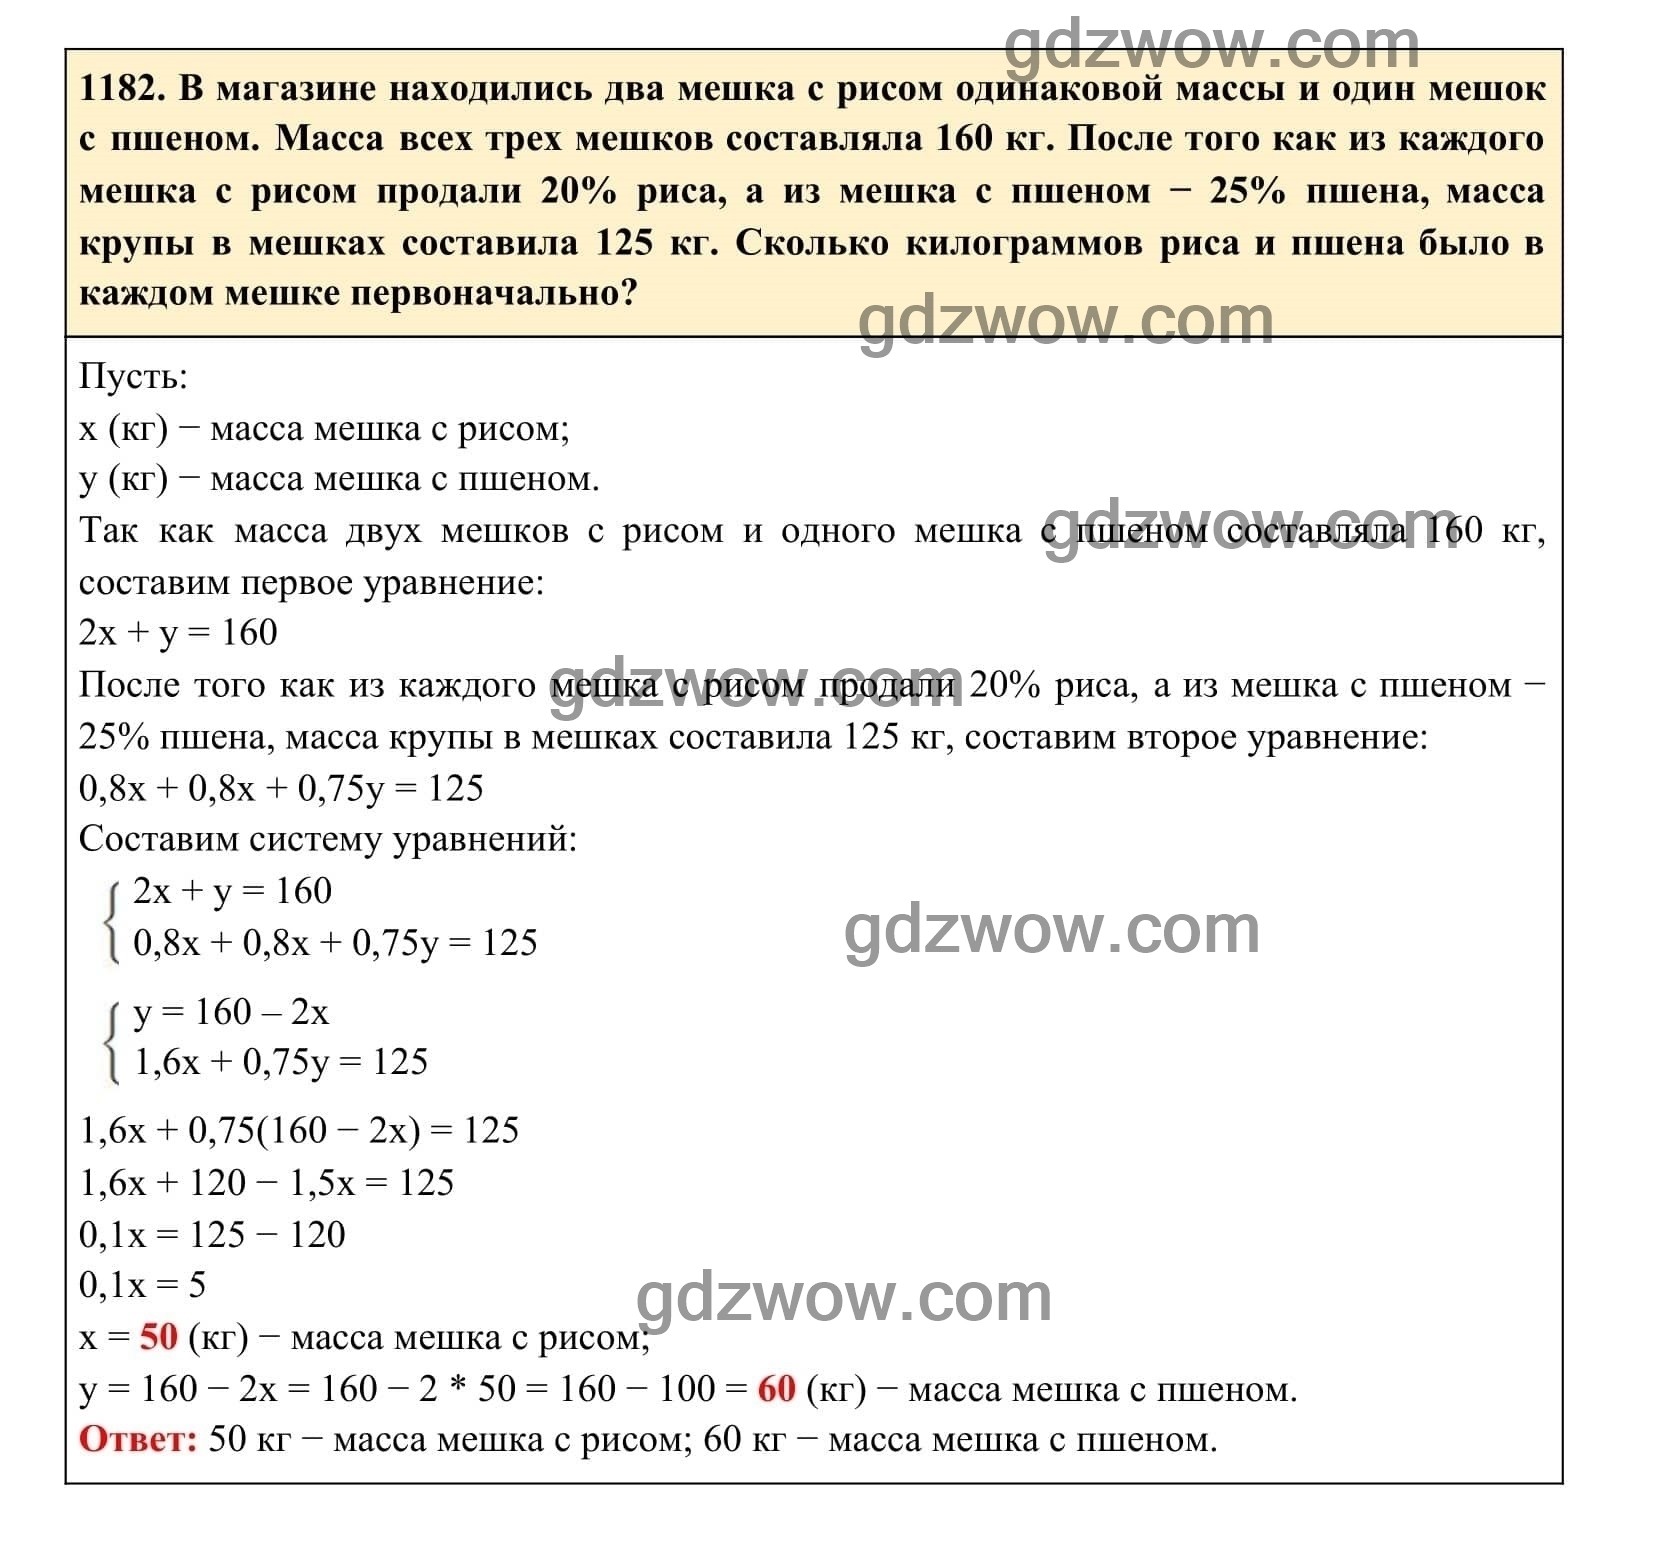 Упражнение 1182 - ГДЗ по Алгебре 7 класс Учебник Макарычев (решебник) - GDZwow